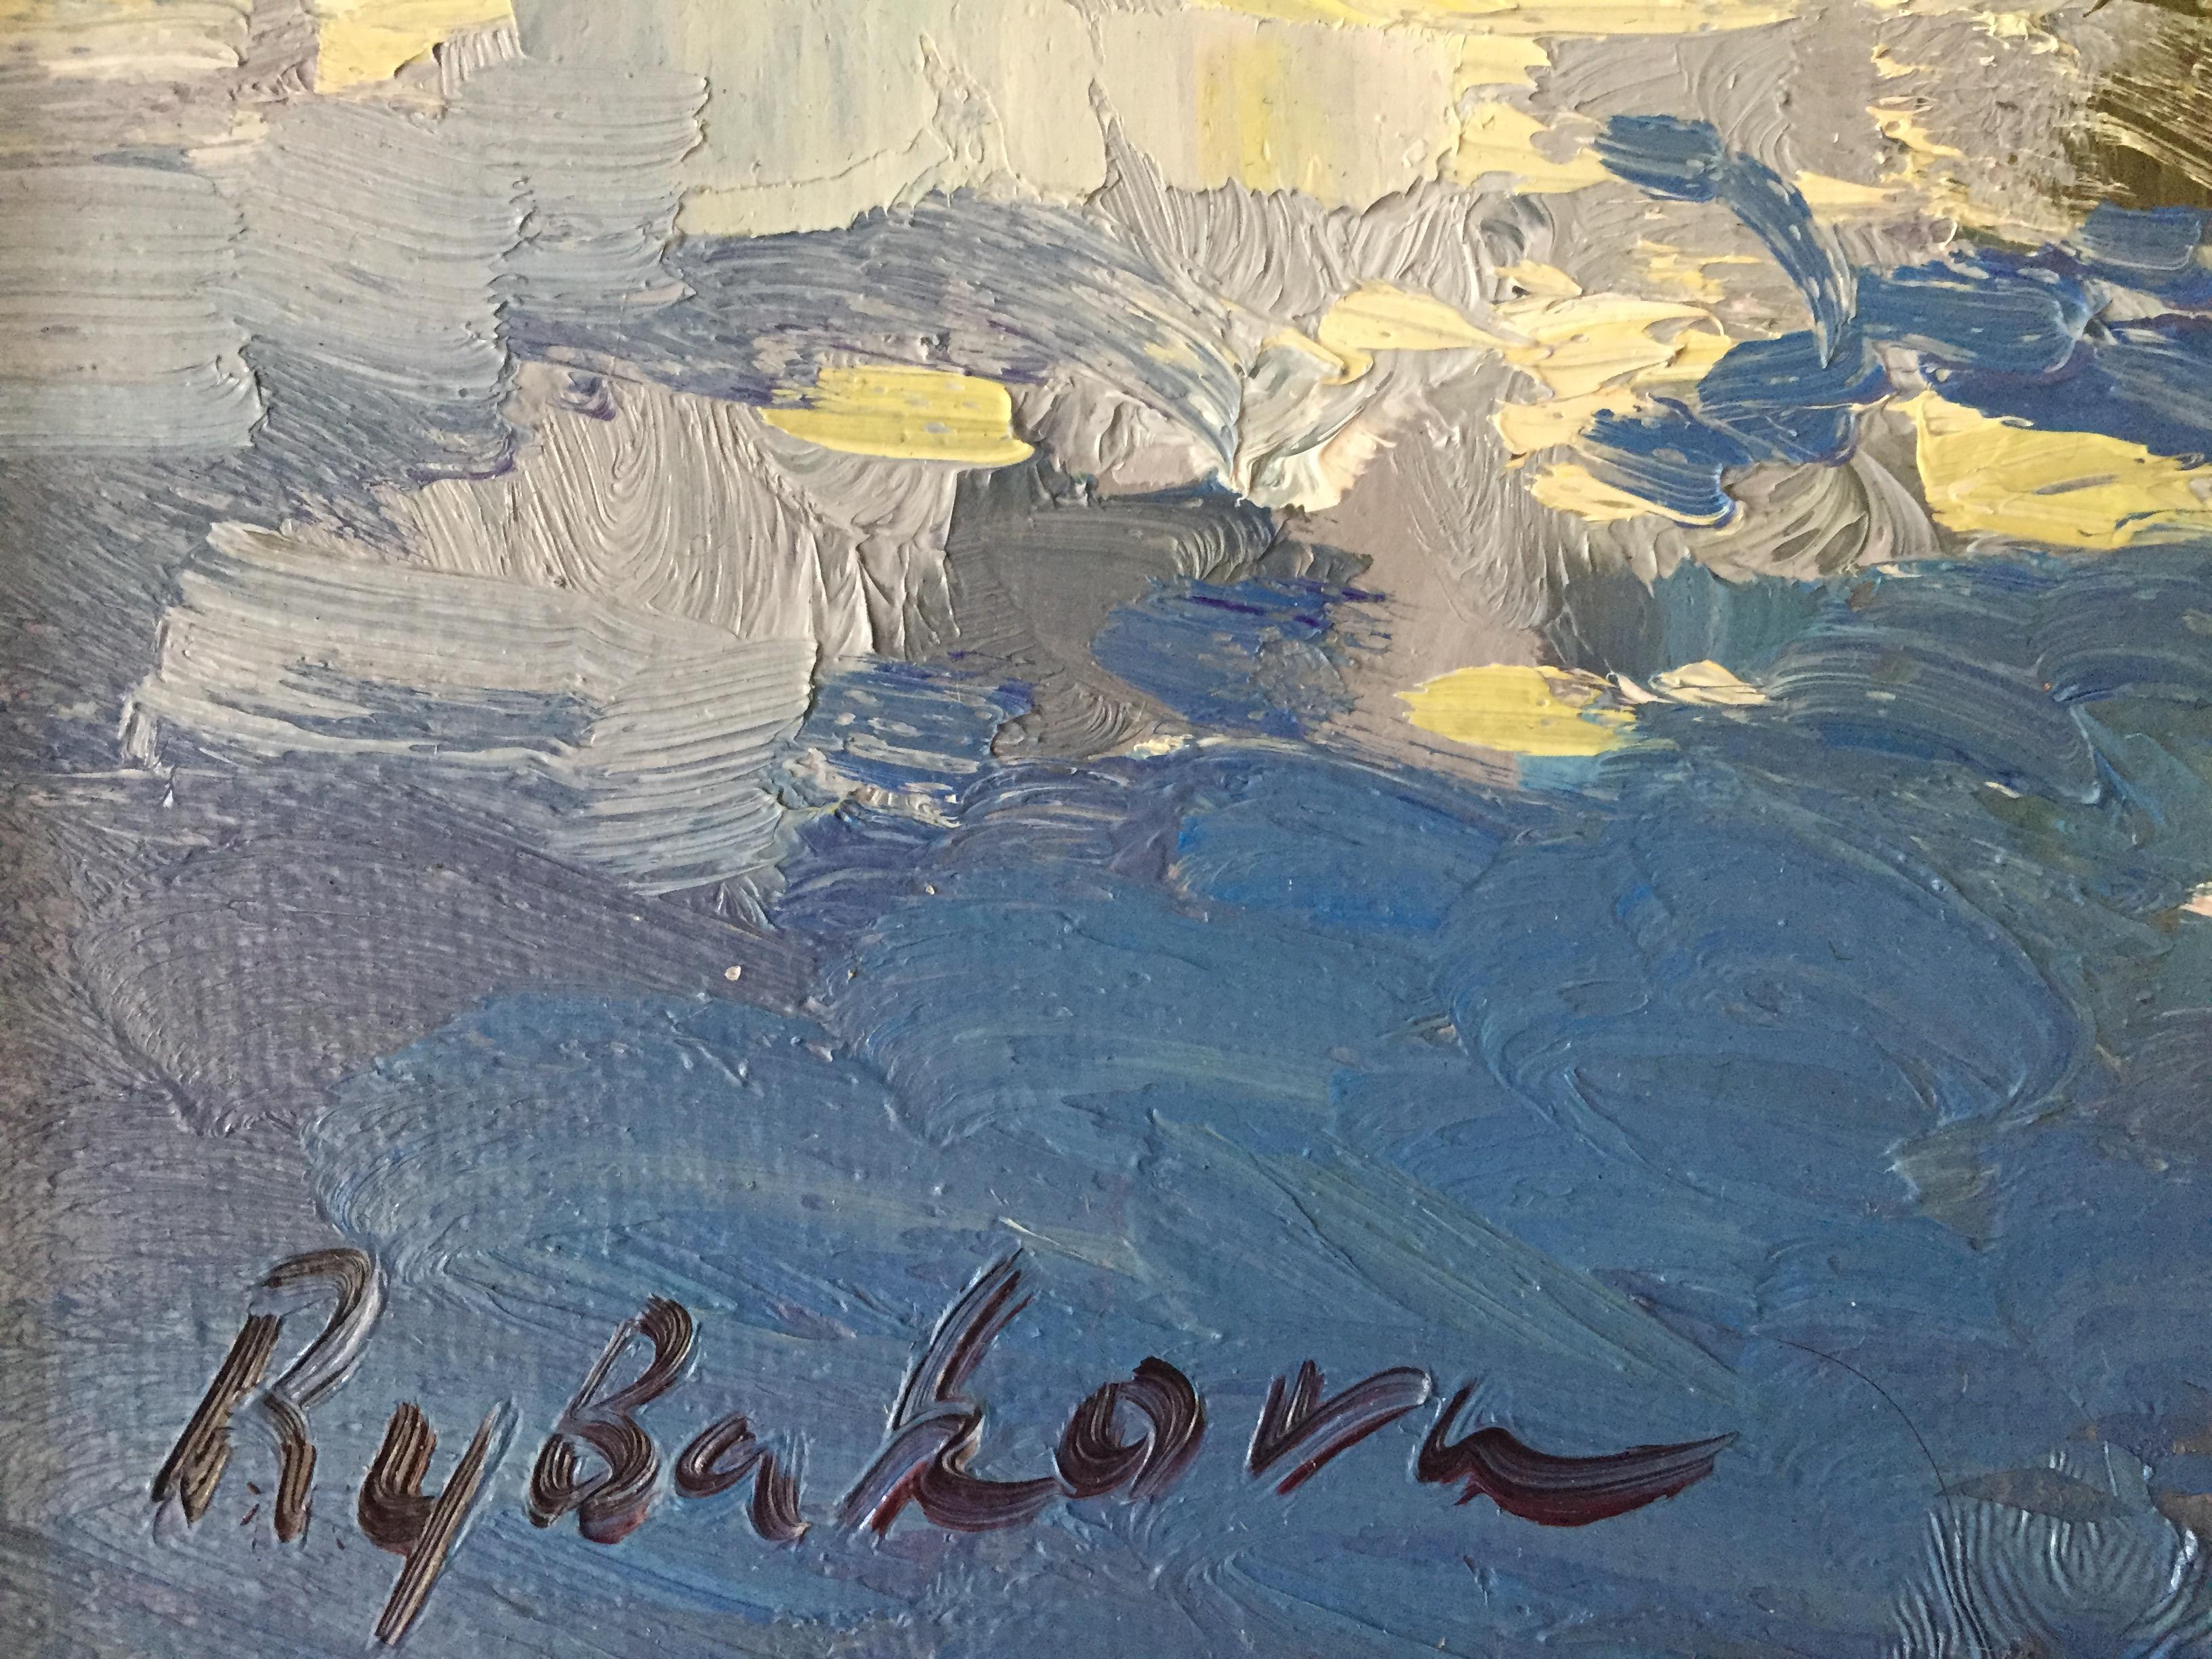 Vorontsov Pond - Impressionist Painting by Irina Rybakova